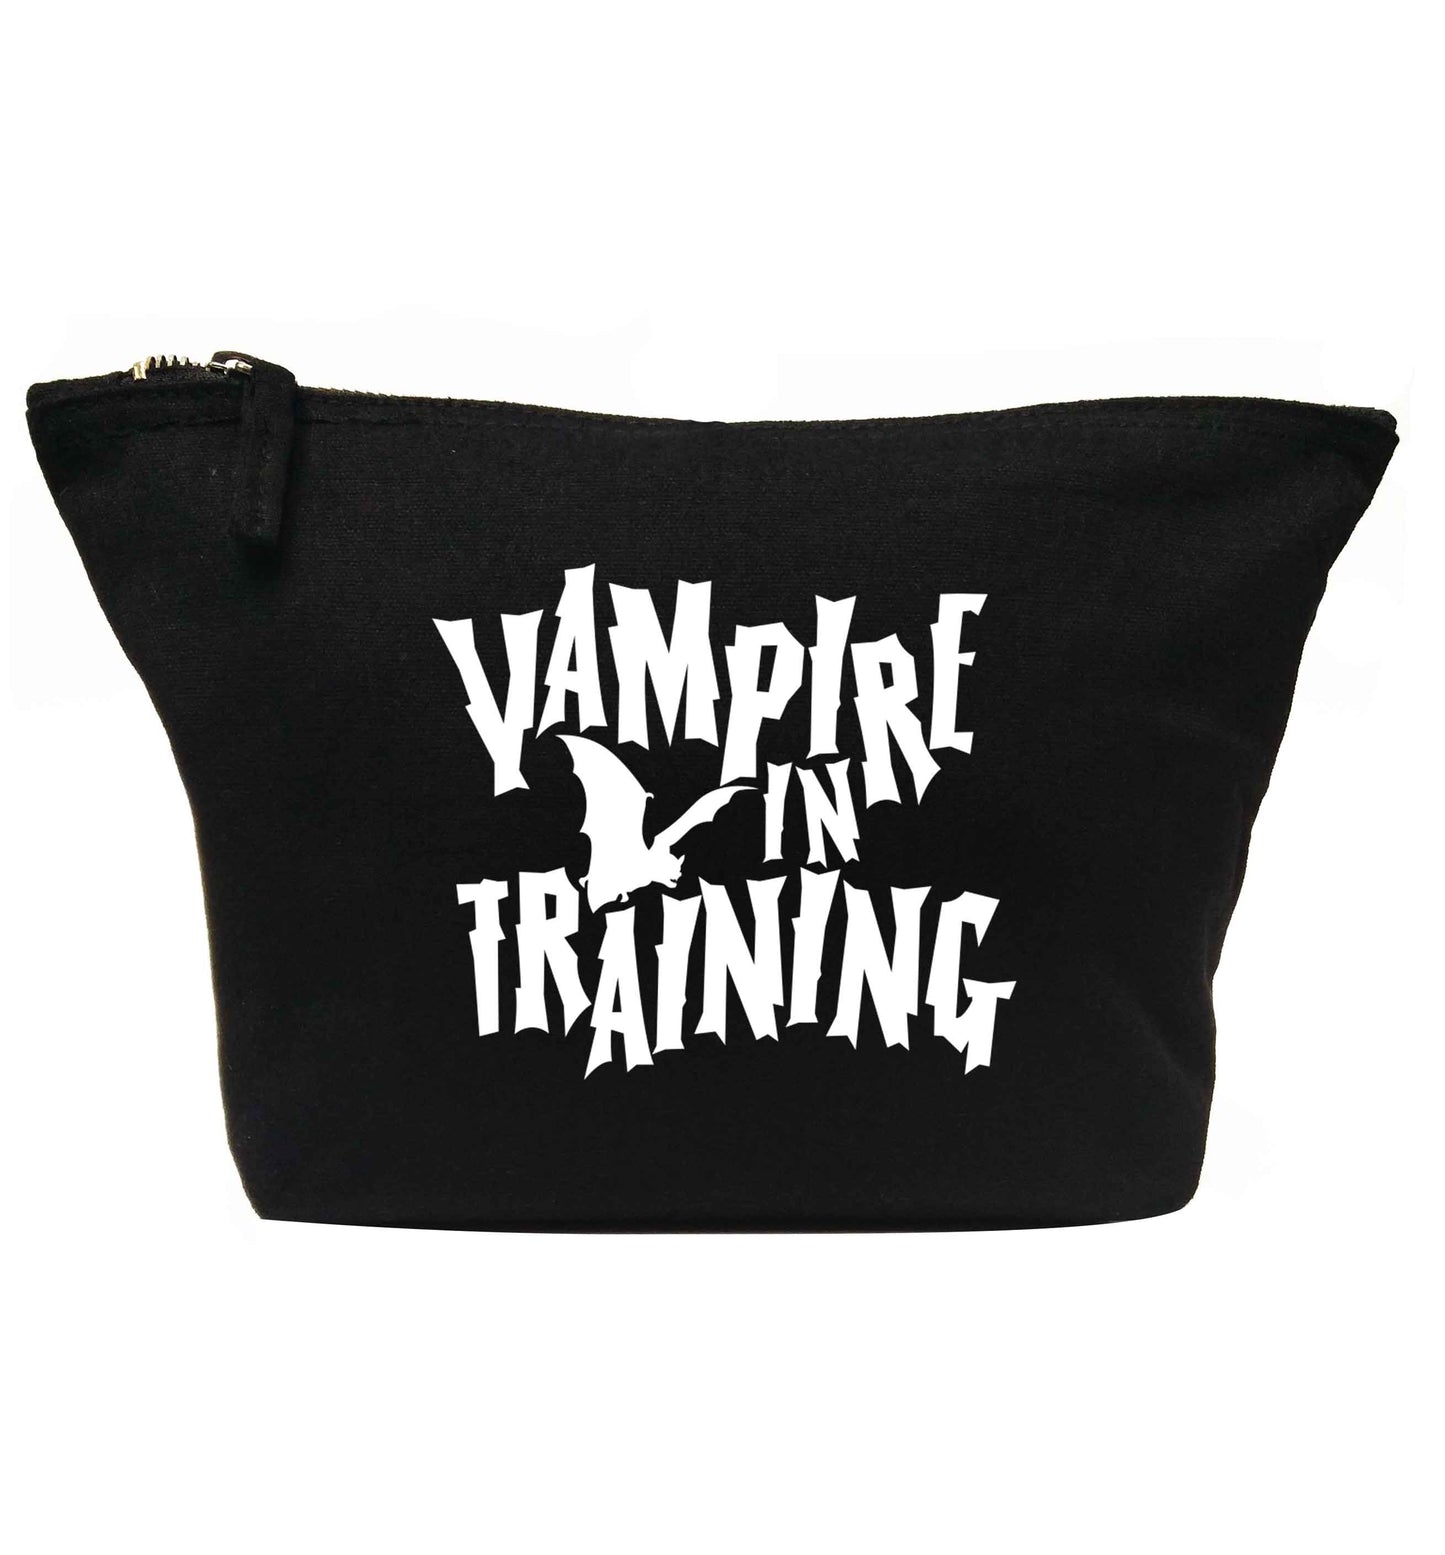 Vampire in training | Makeup / wash bag